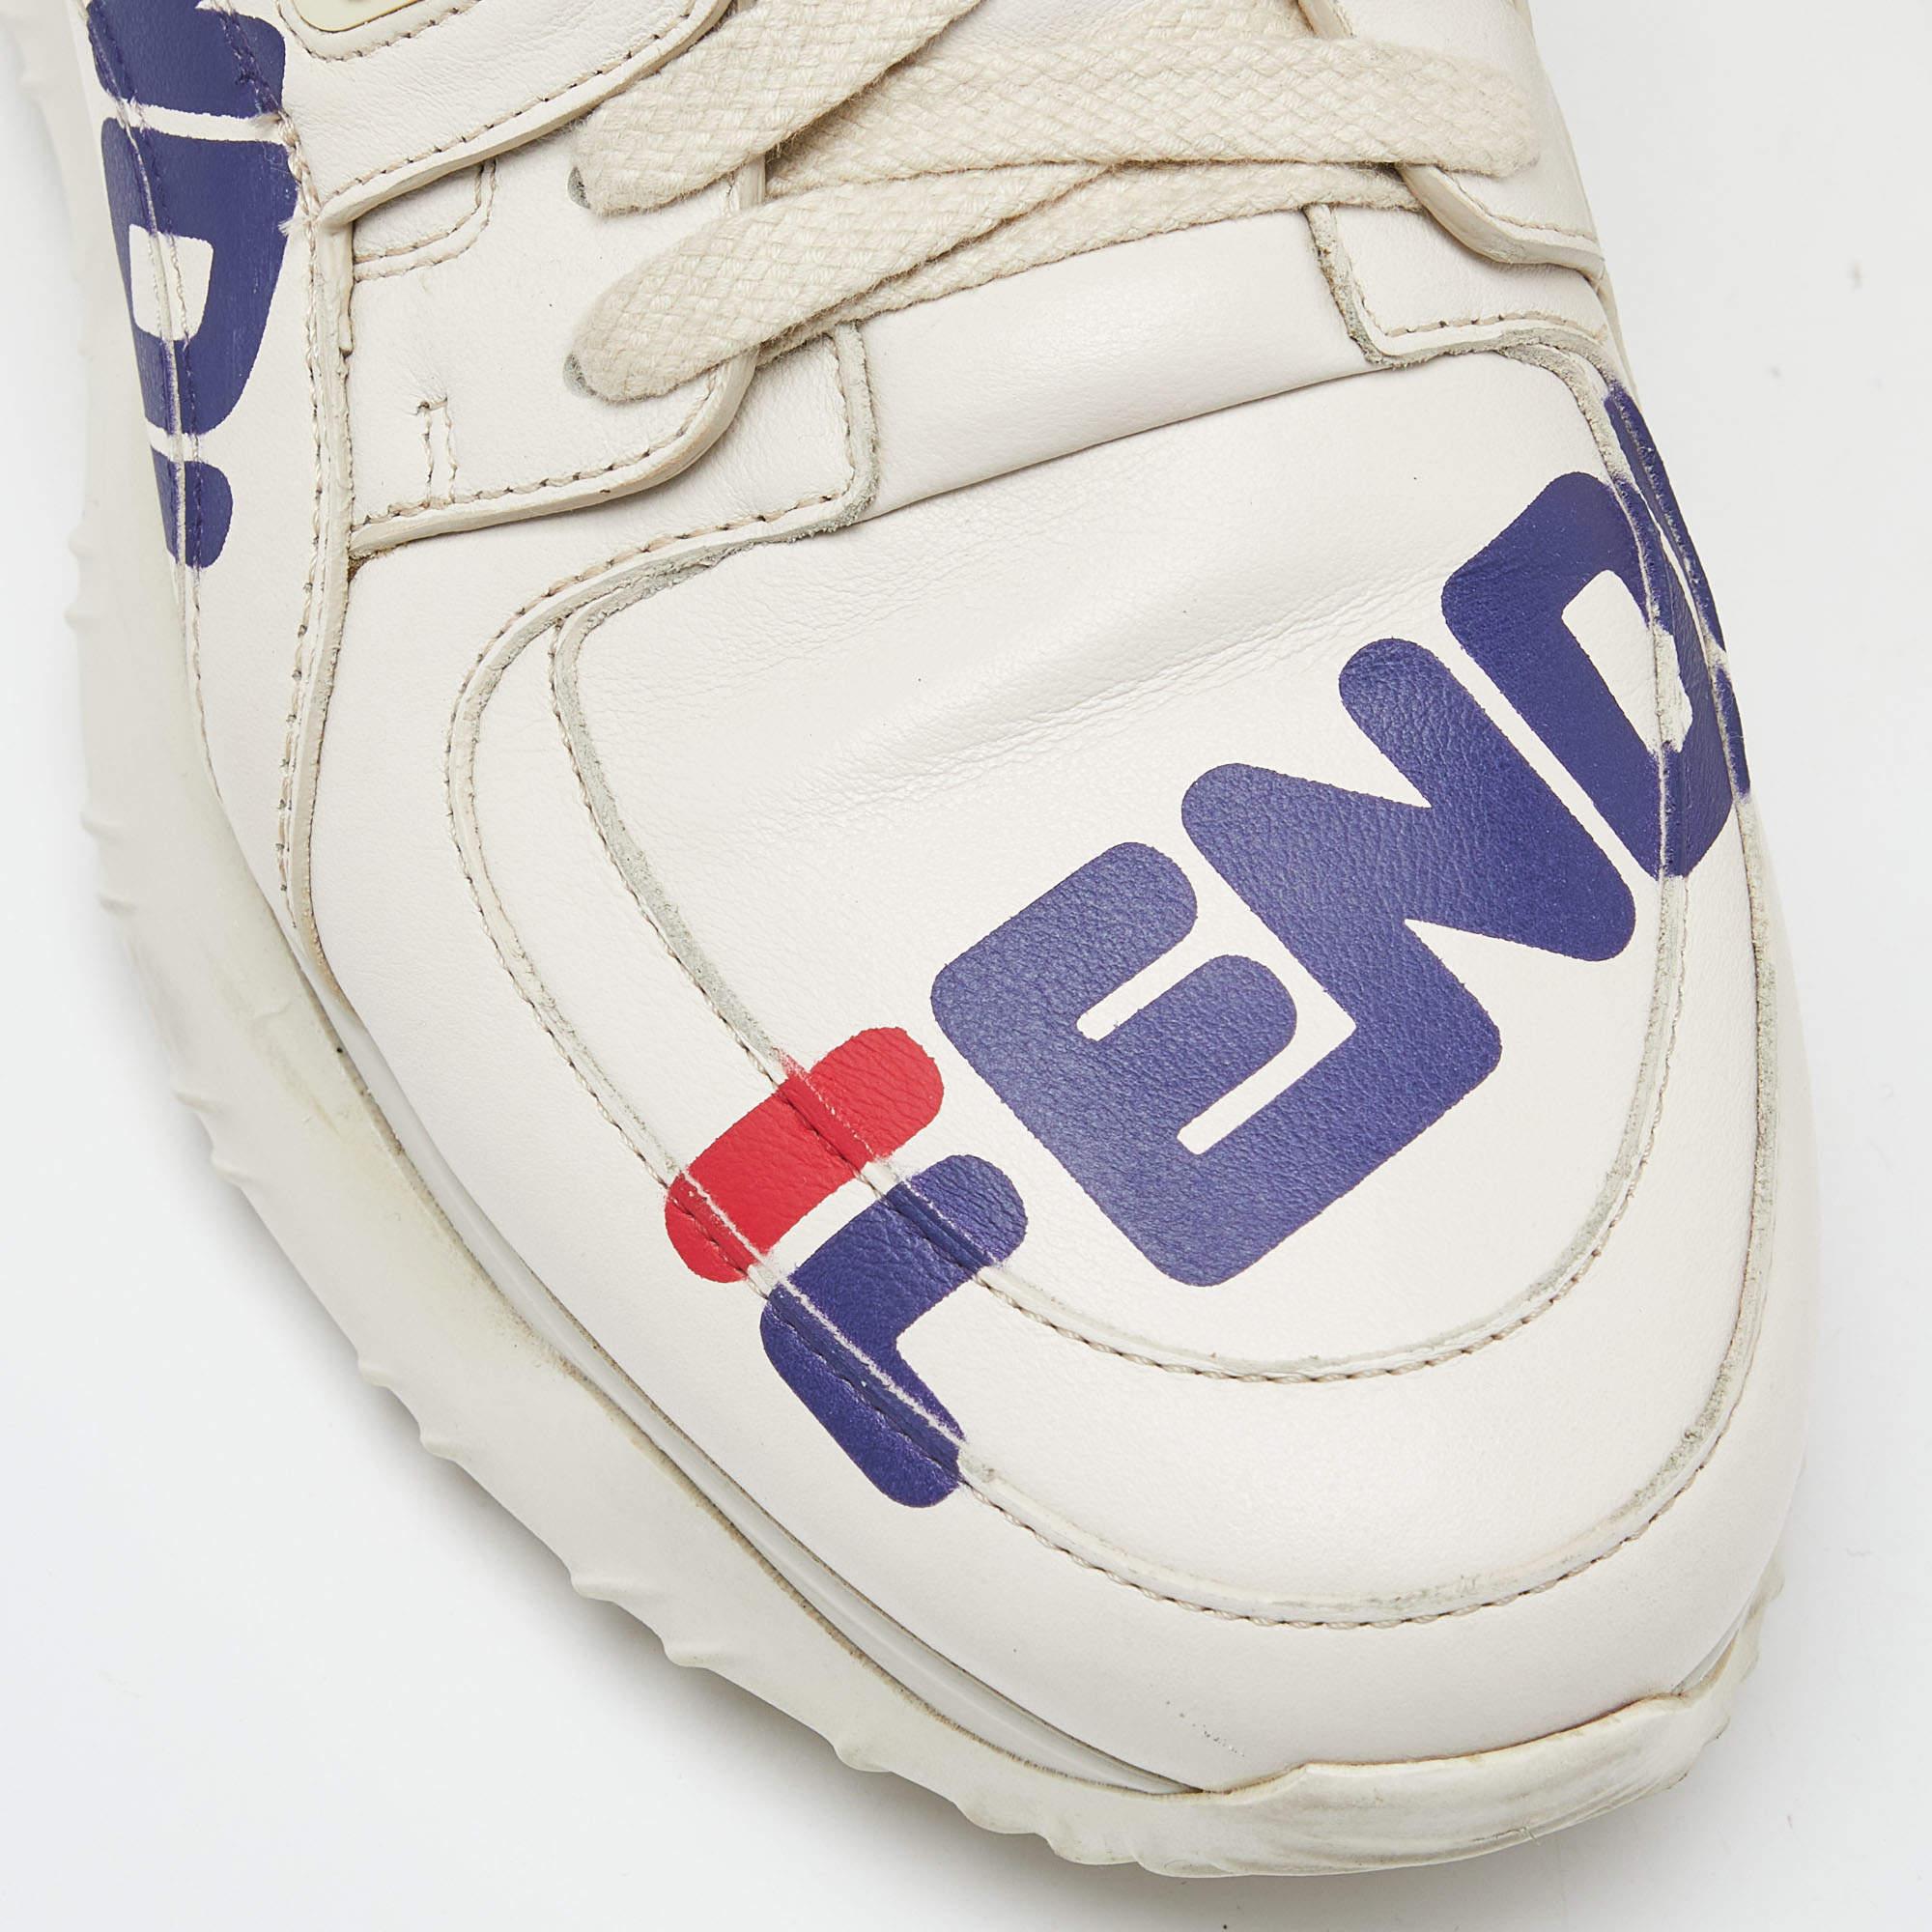 Fendi Off White Leather and Rubber Fendi Fila Mania Sneakers Size 39 4